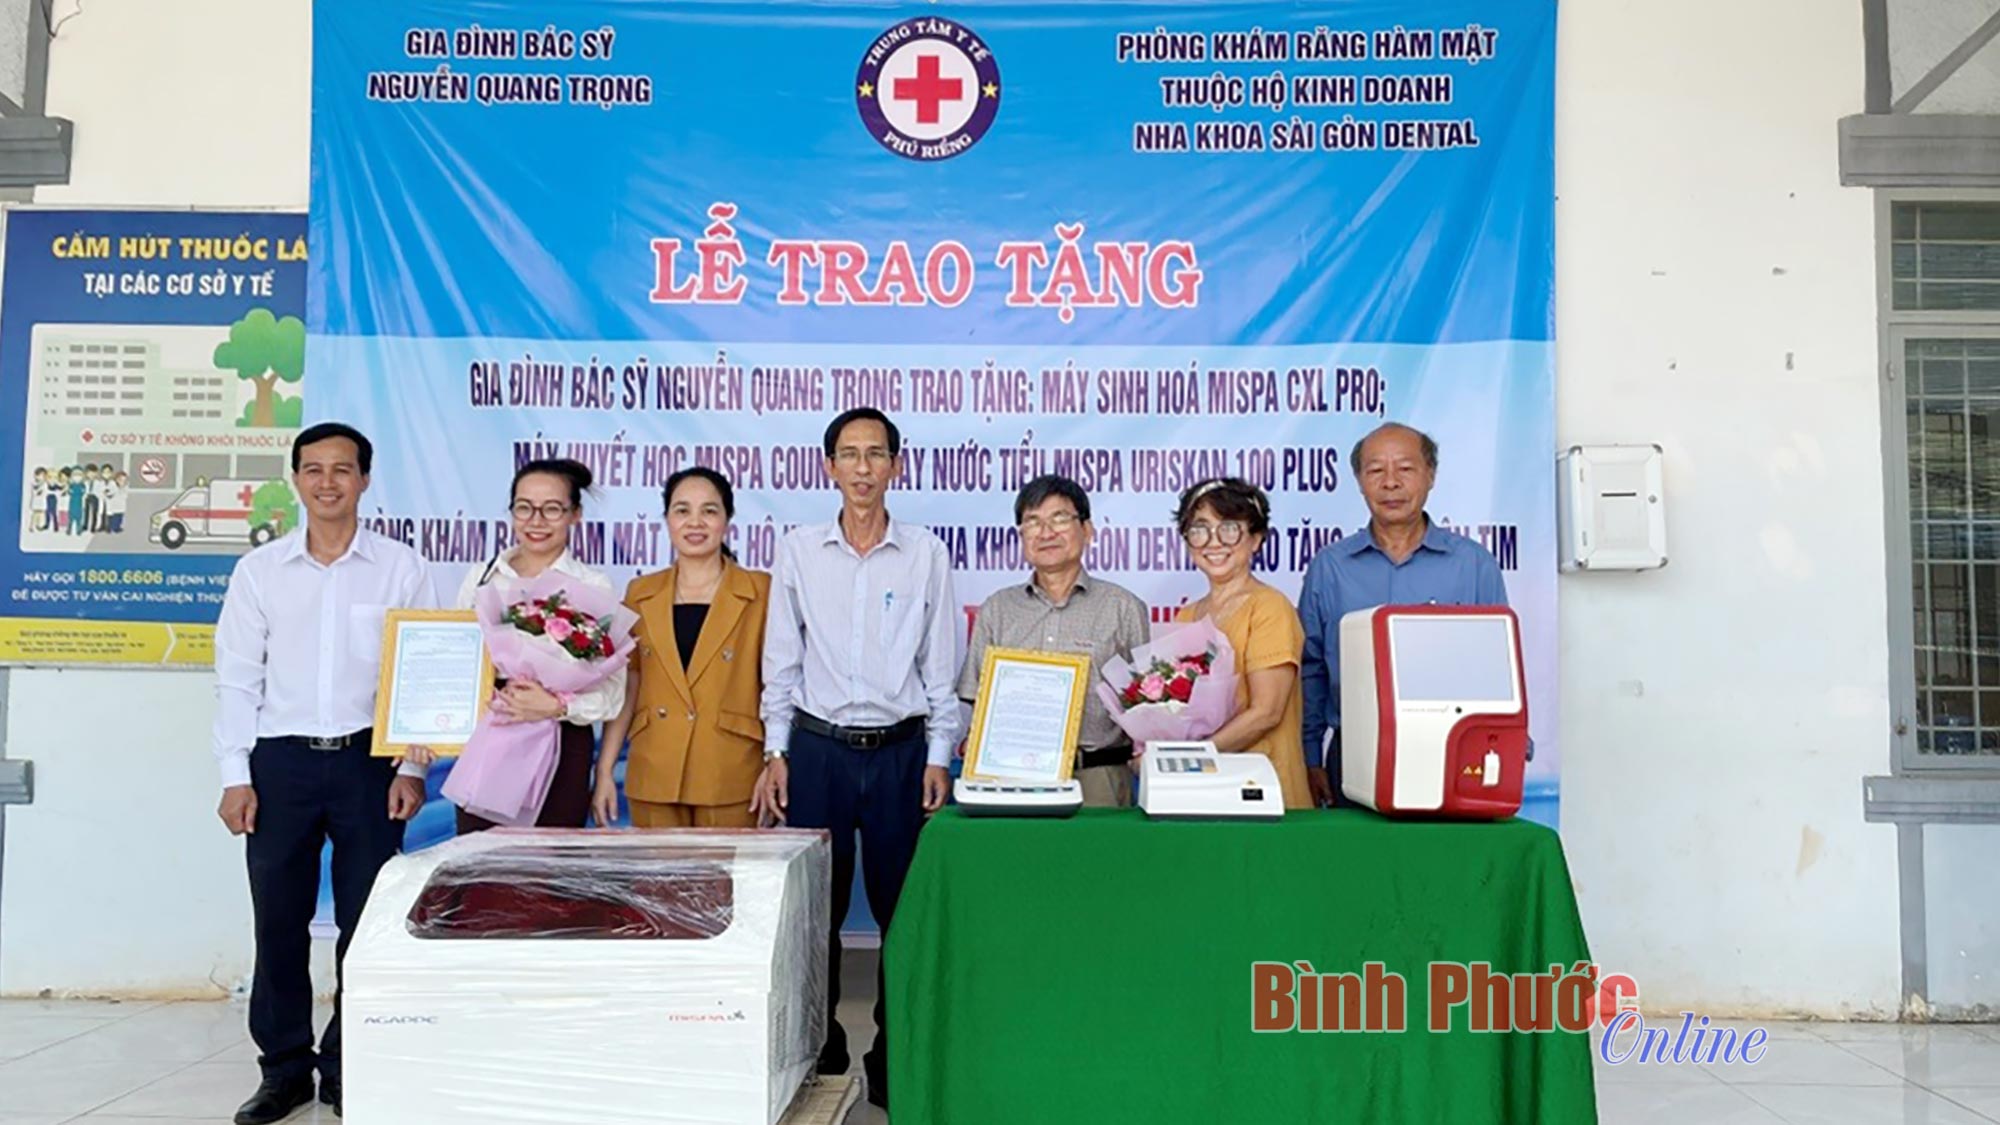 Trao tặng thiết bị y tế cho Trung tâm y tế huyện Phú Riềng